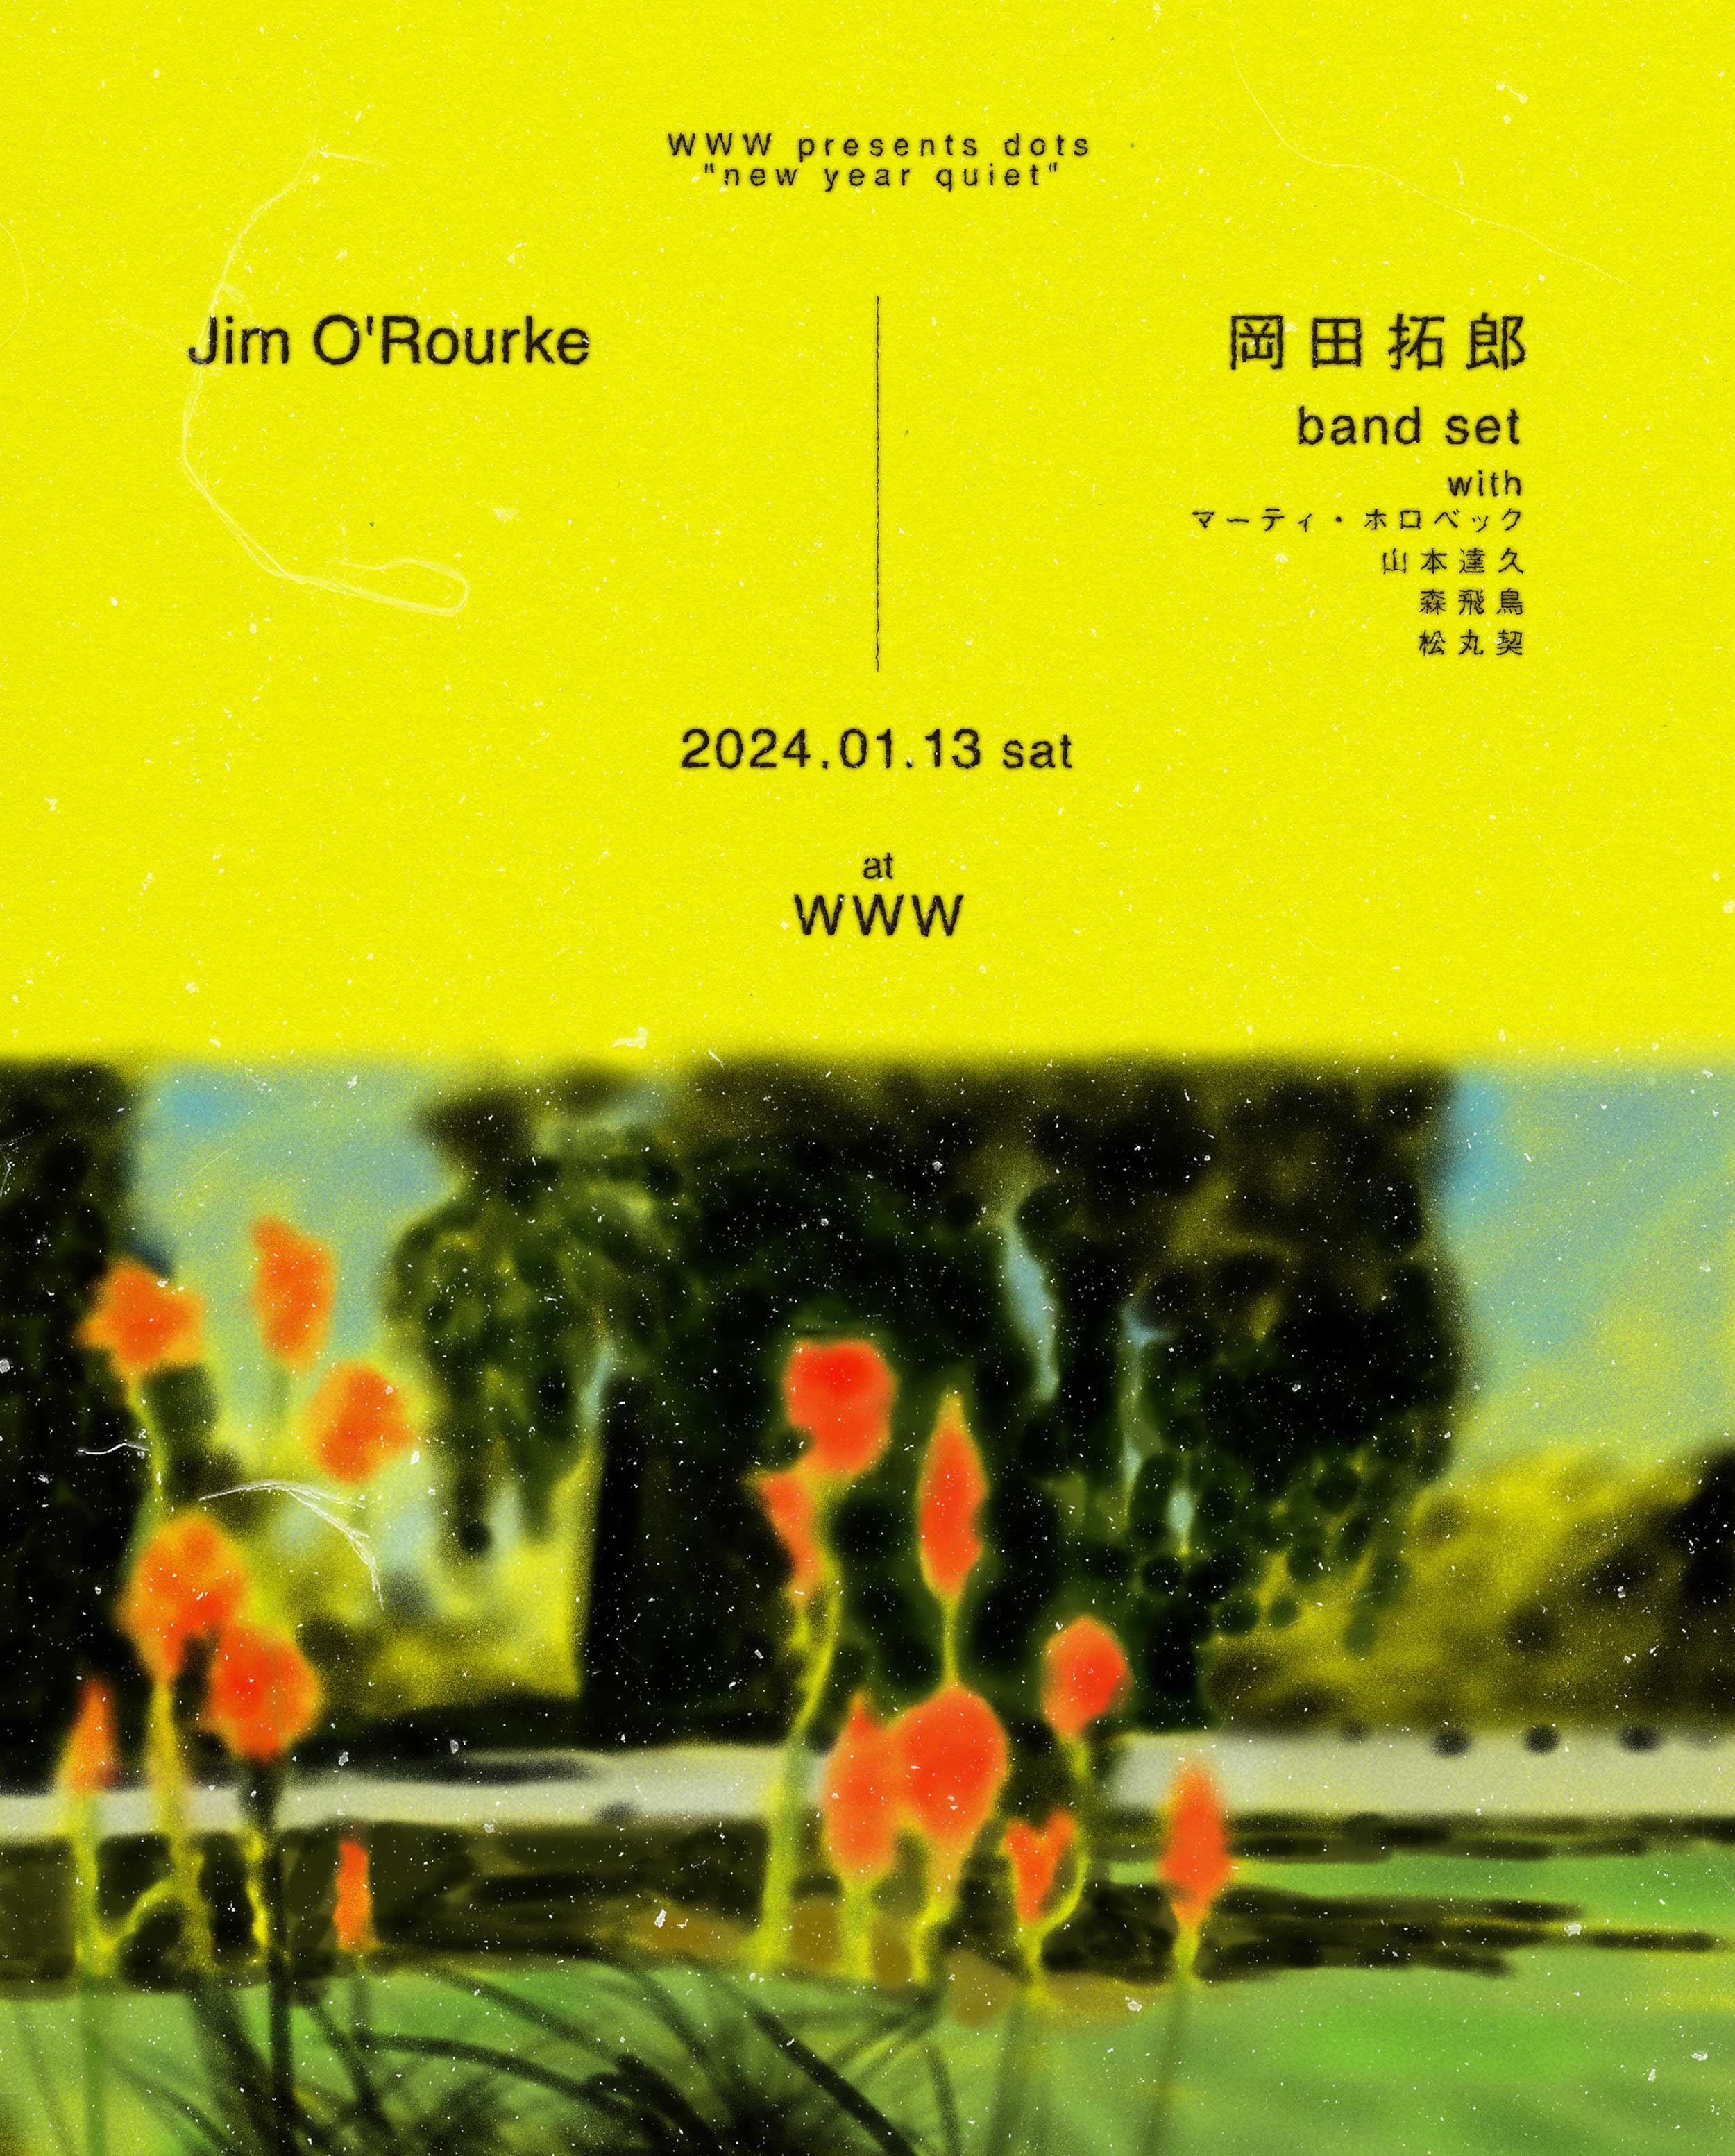 ジム・オルーク(Jim O'Rourke) / 岡田拓郎 band set (with マーティ・ホロベック、山本達久、森飛鳥、松丸契)